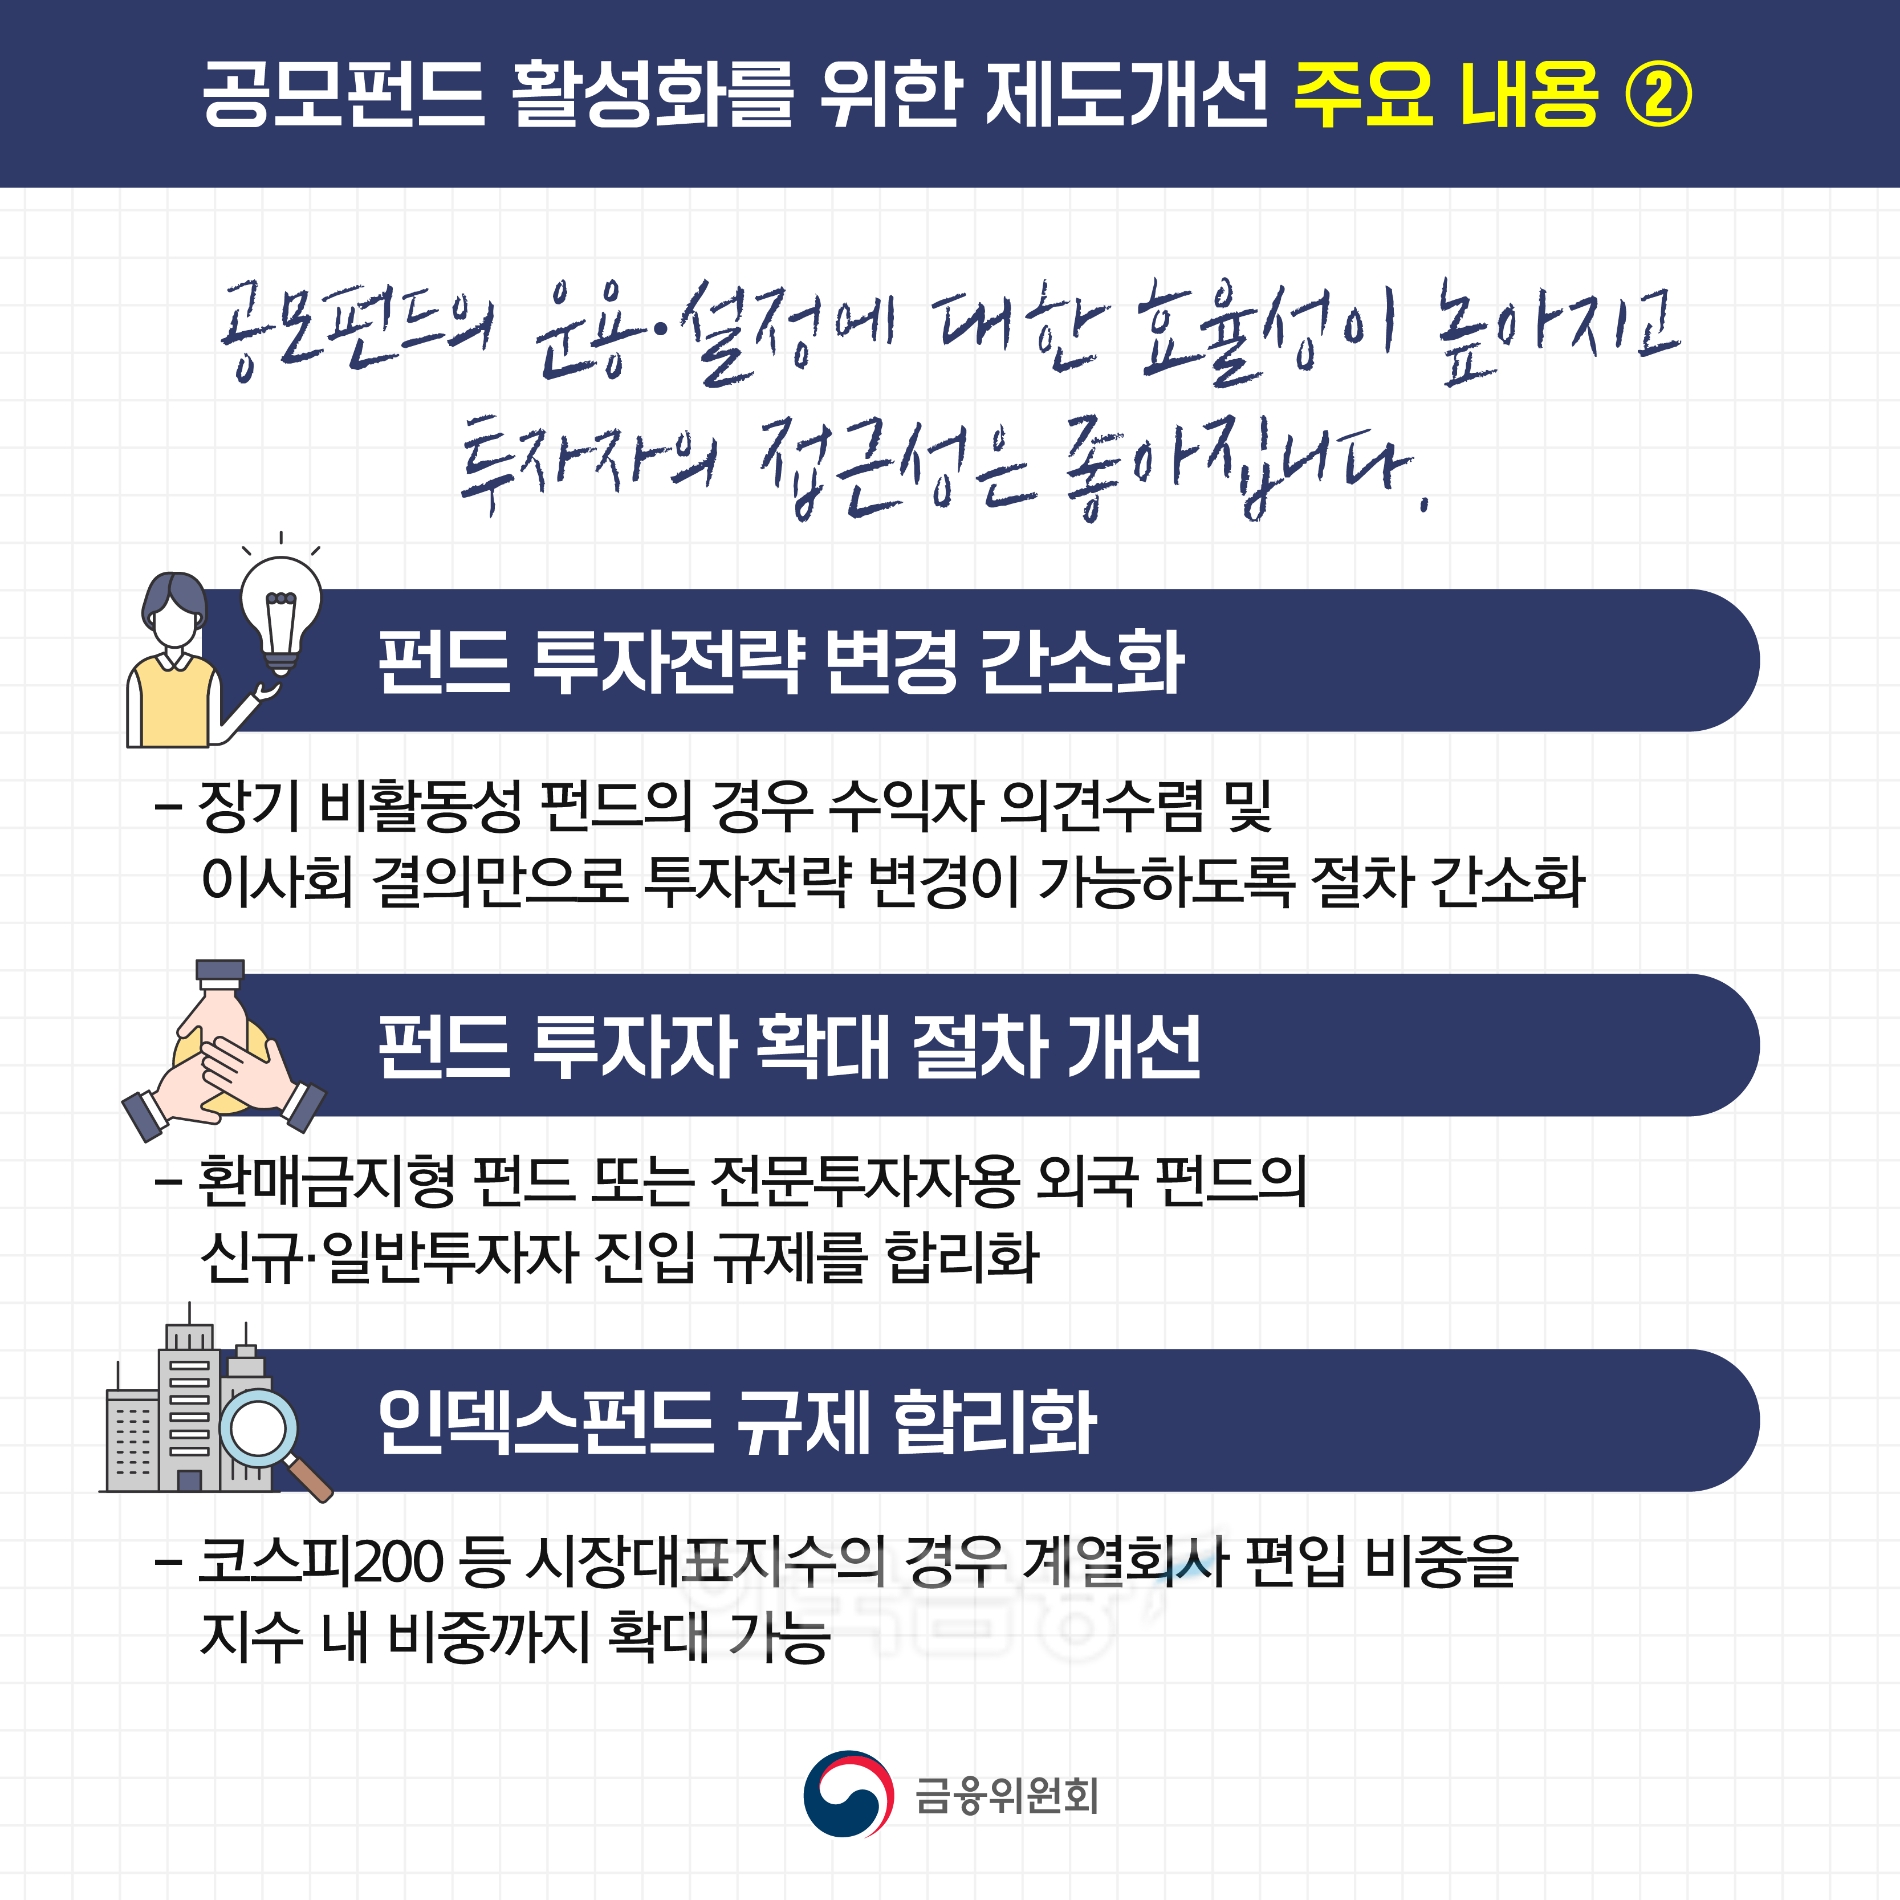 공모 펀드 활성화를 위한 제도 개선 주요 내용./사진=금융위원회(위원장 김주현)